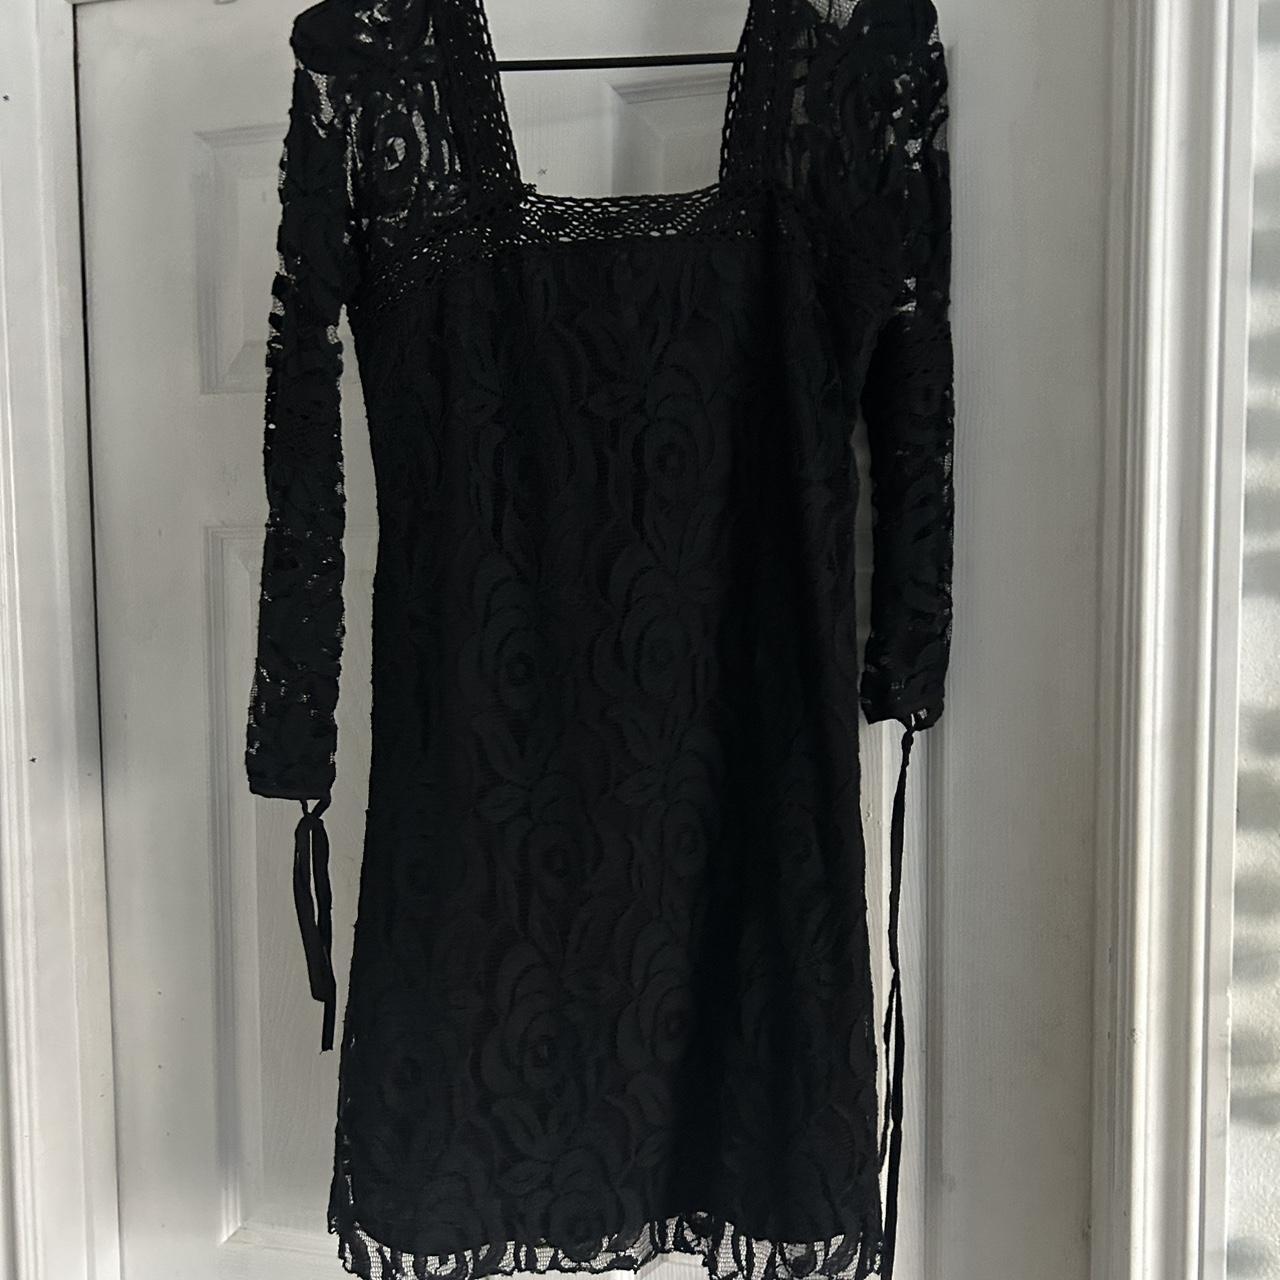 black vintage lacey dress my best friends aunt was... - Depop